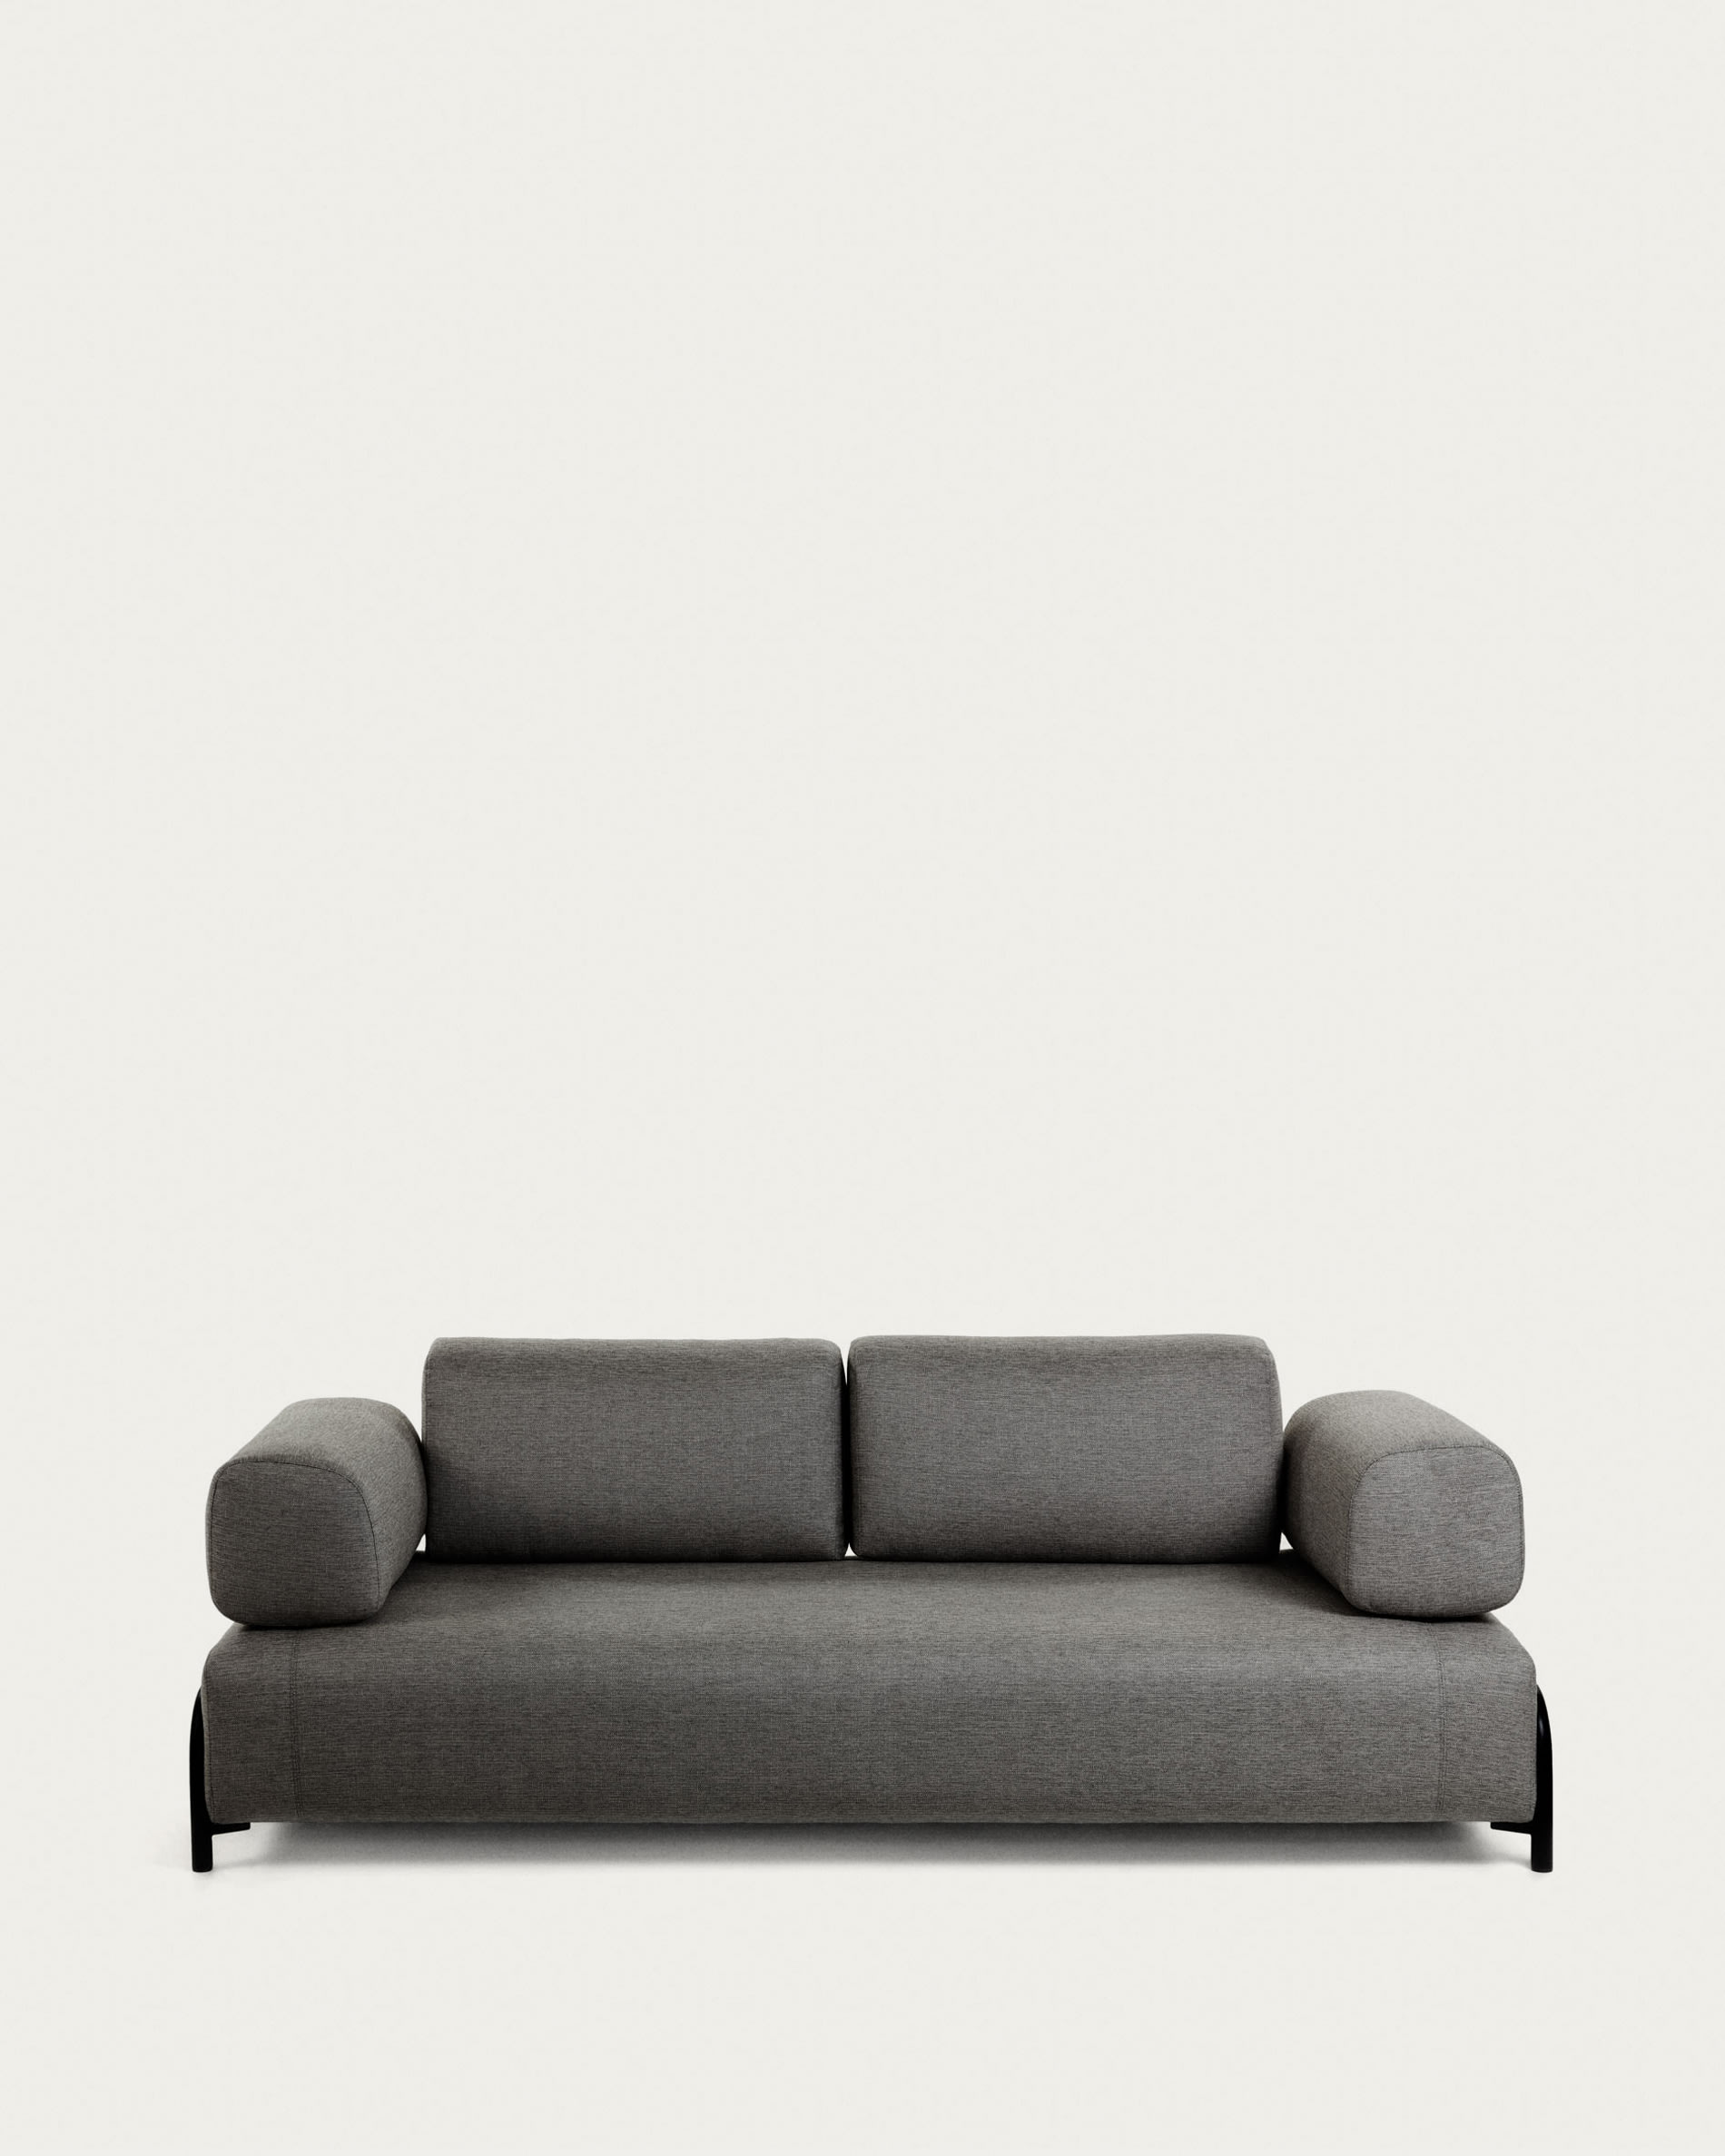 Compo 3 seater sofa in dark grey, 232 cm